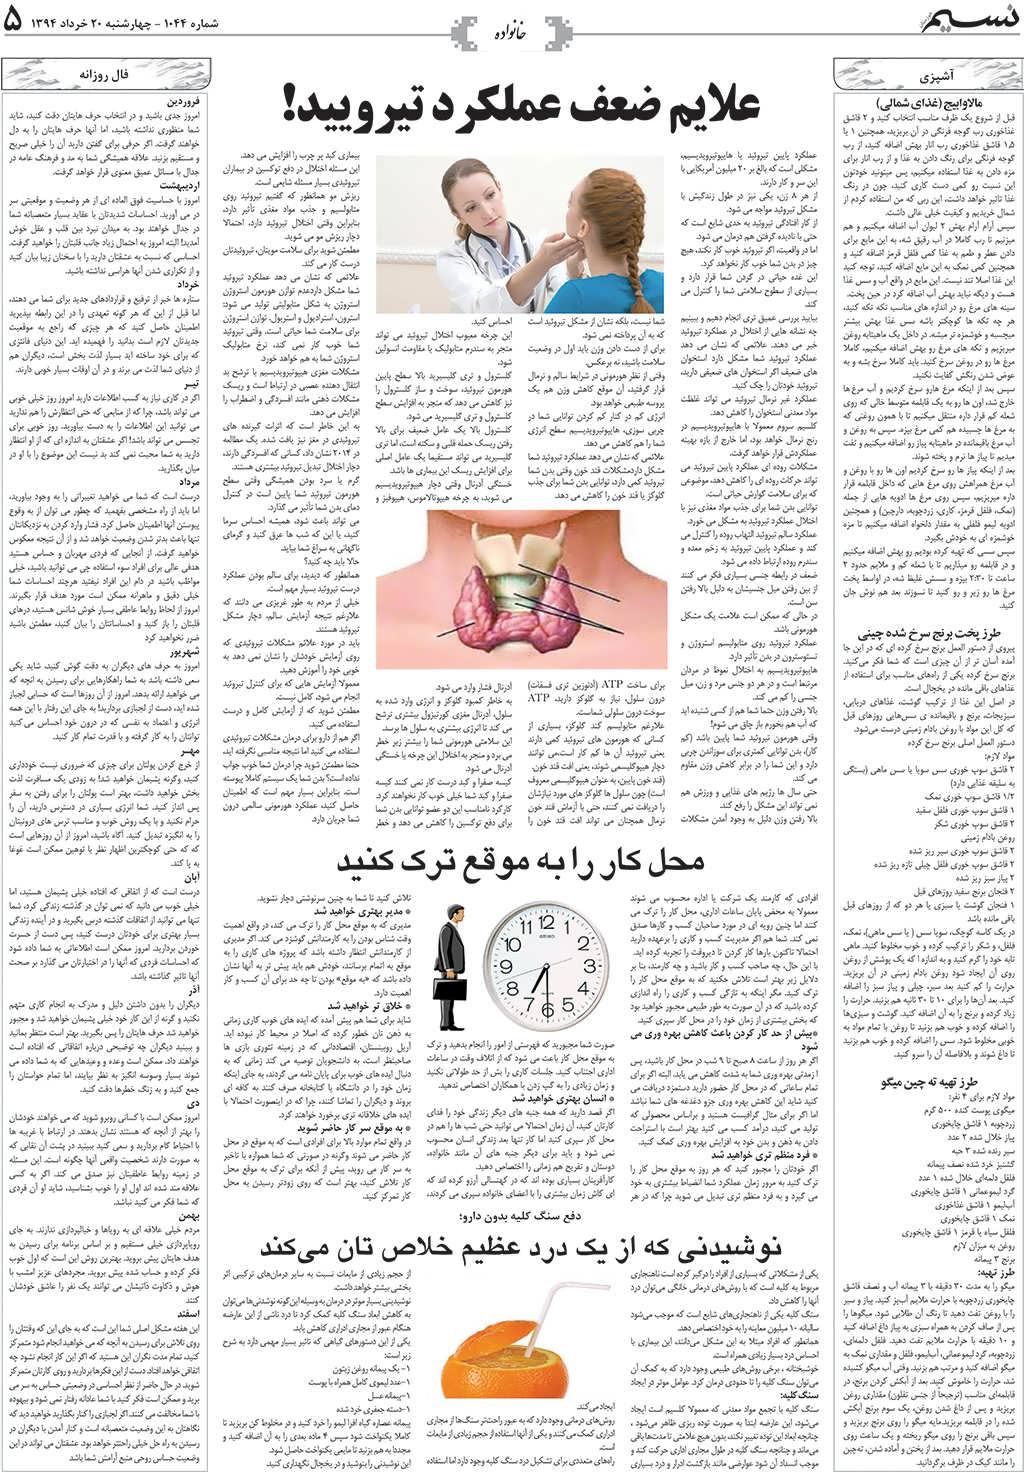 صفحه خانواده روزنامه نسیم شماره 1044